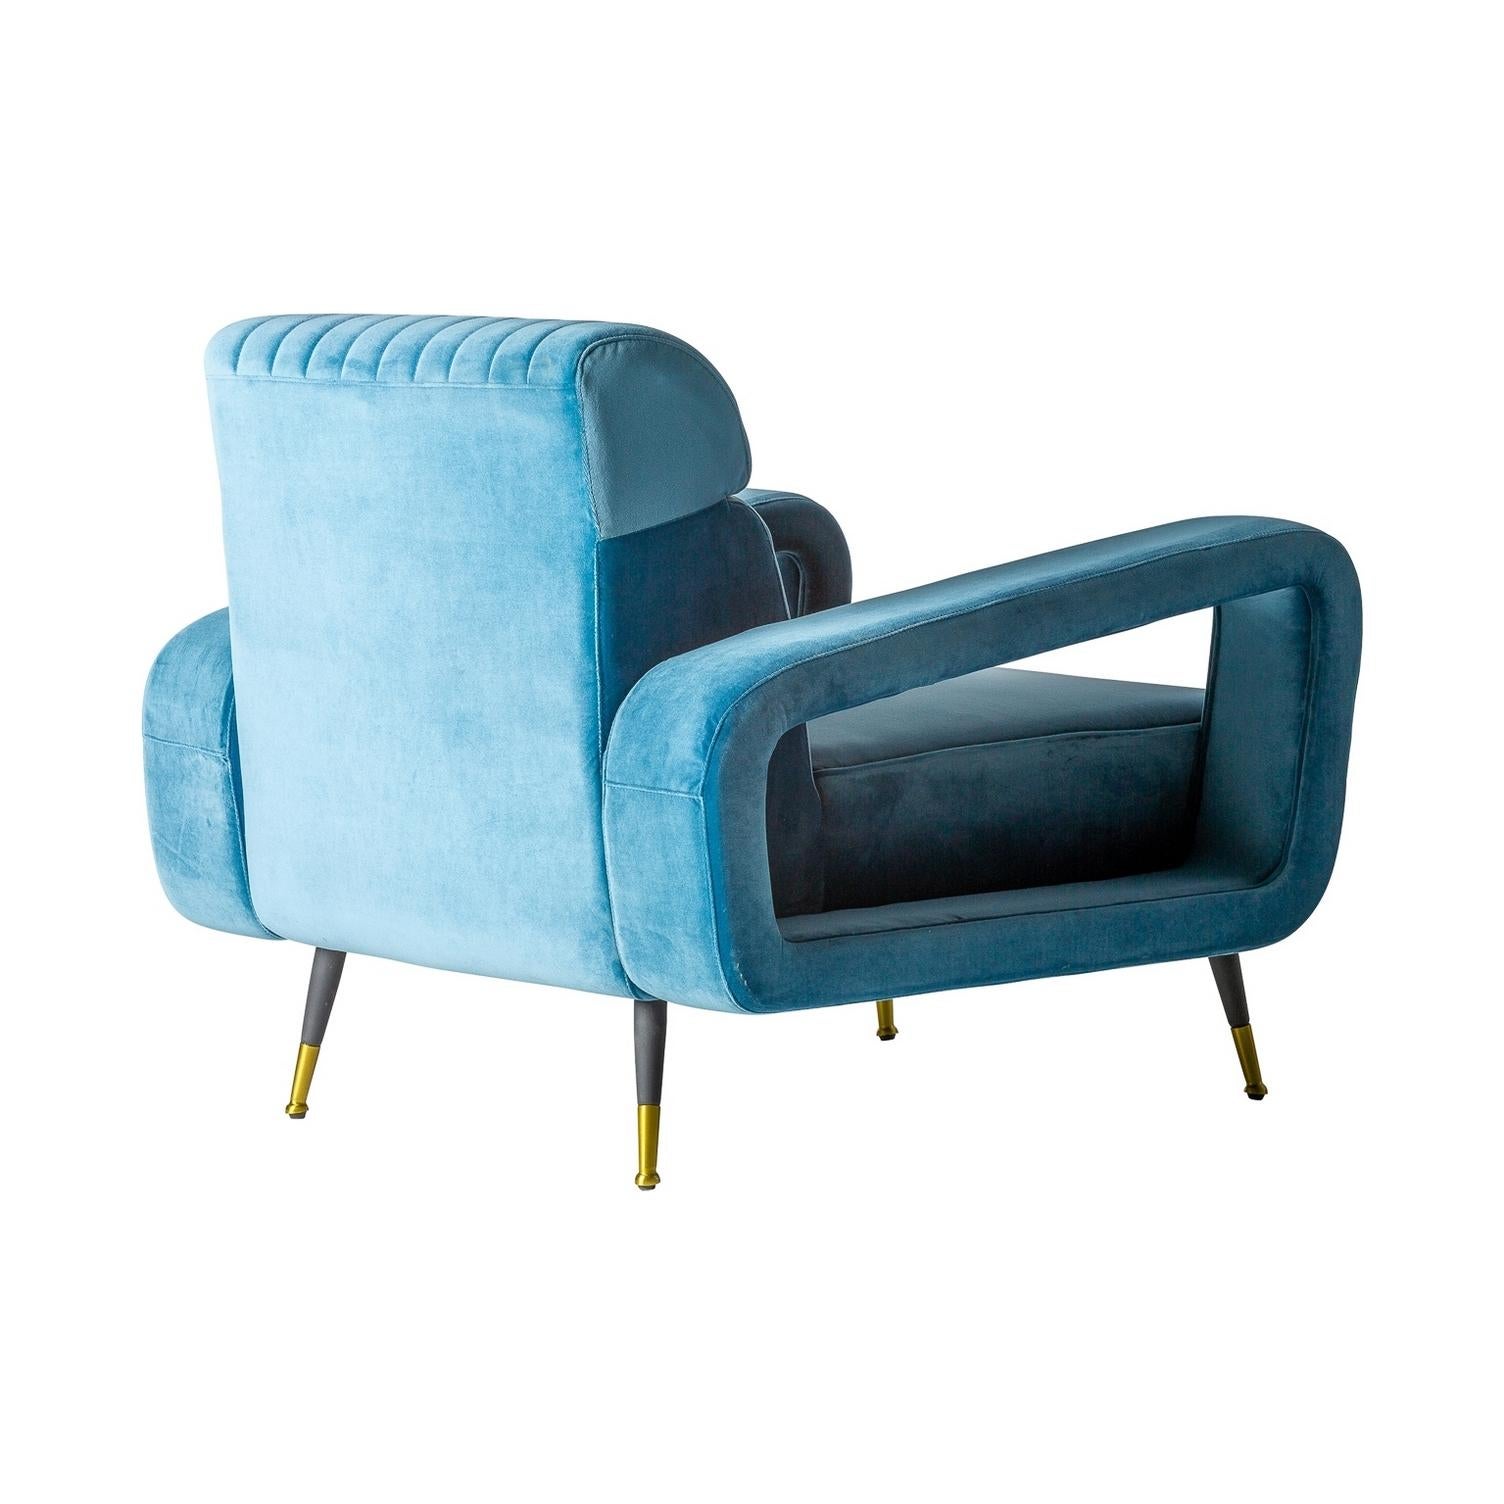 fauteuil confortable de style vintage et design des années 1950 en velours bleu et pieds en métal noir avec finitions dorées.